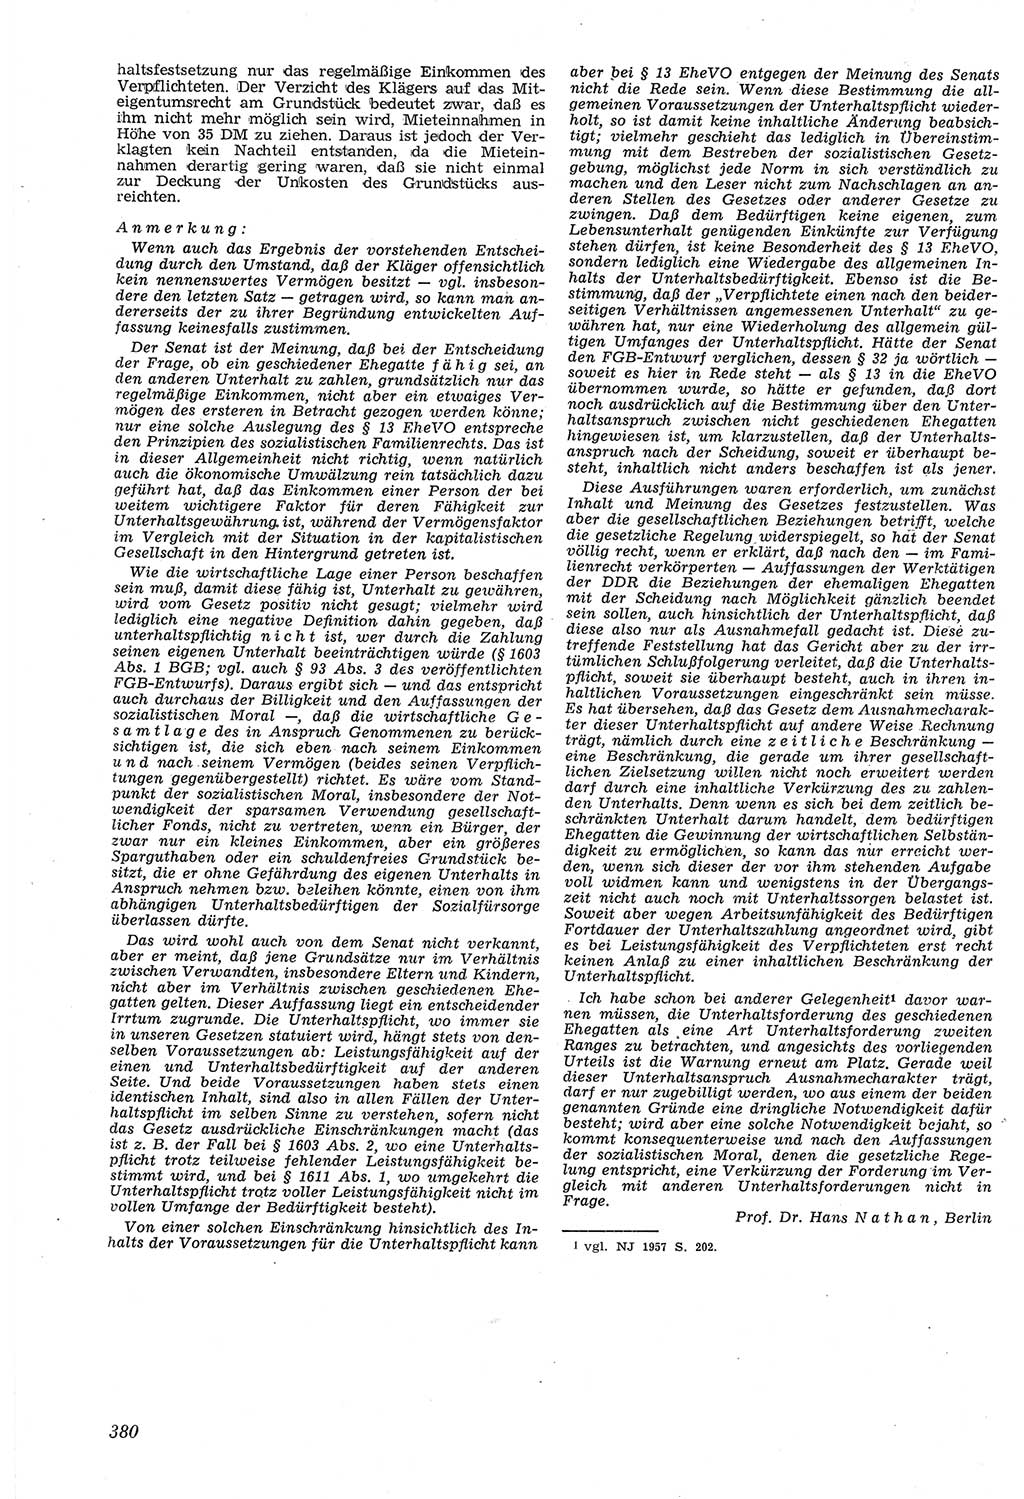 Neue Justiz (NJ), Zeitschrift für Recht und Rechtswissenschaft [Deutsche Demokratische Republik (DDR)], 14. Jahrgang 1960, Seite 380 (NJ DDR 1960, S. 380)